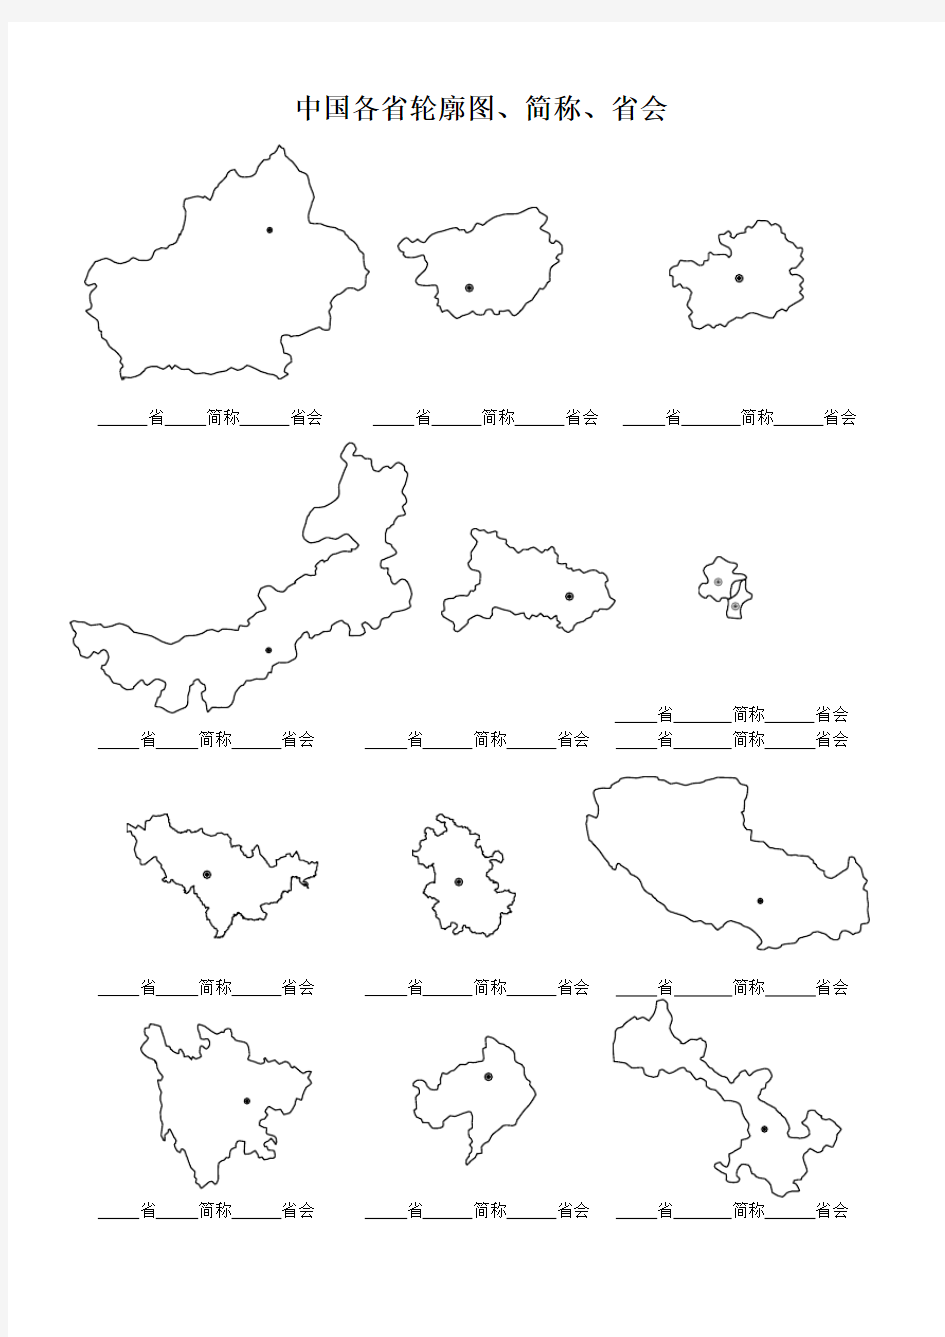 中国各省轮廓图、简称、省会